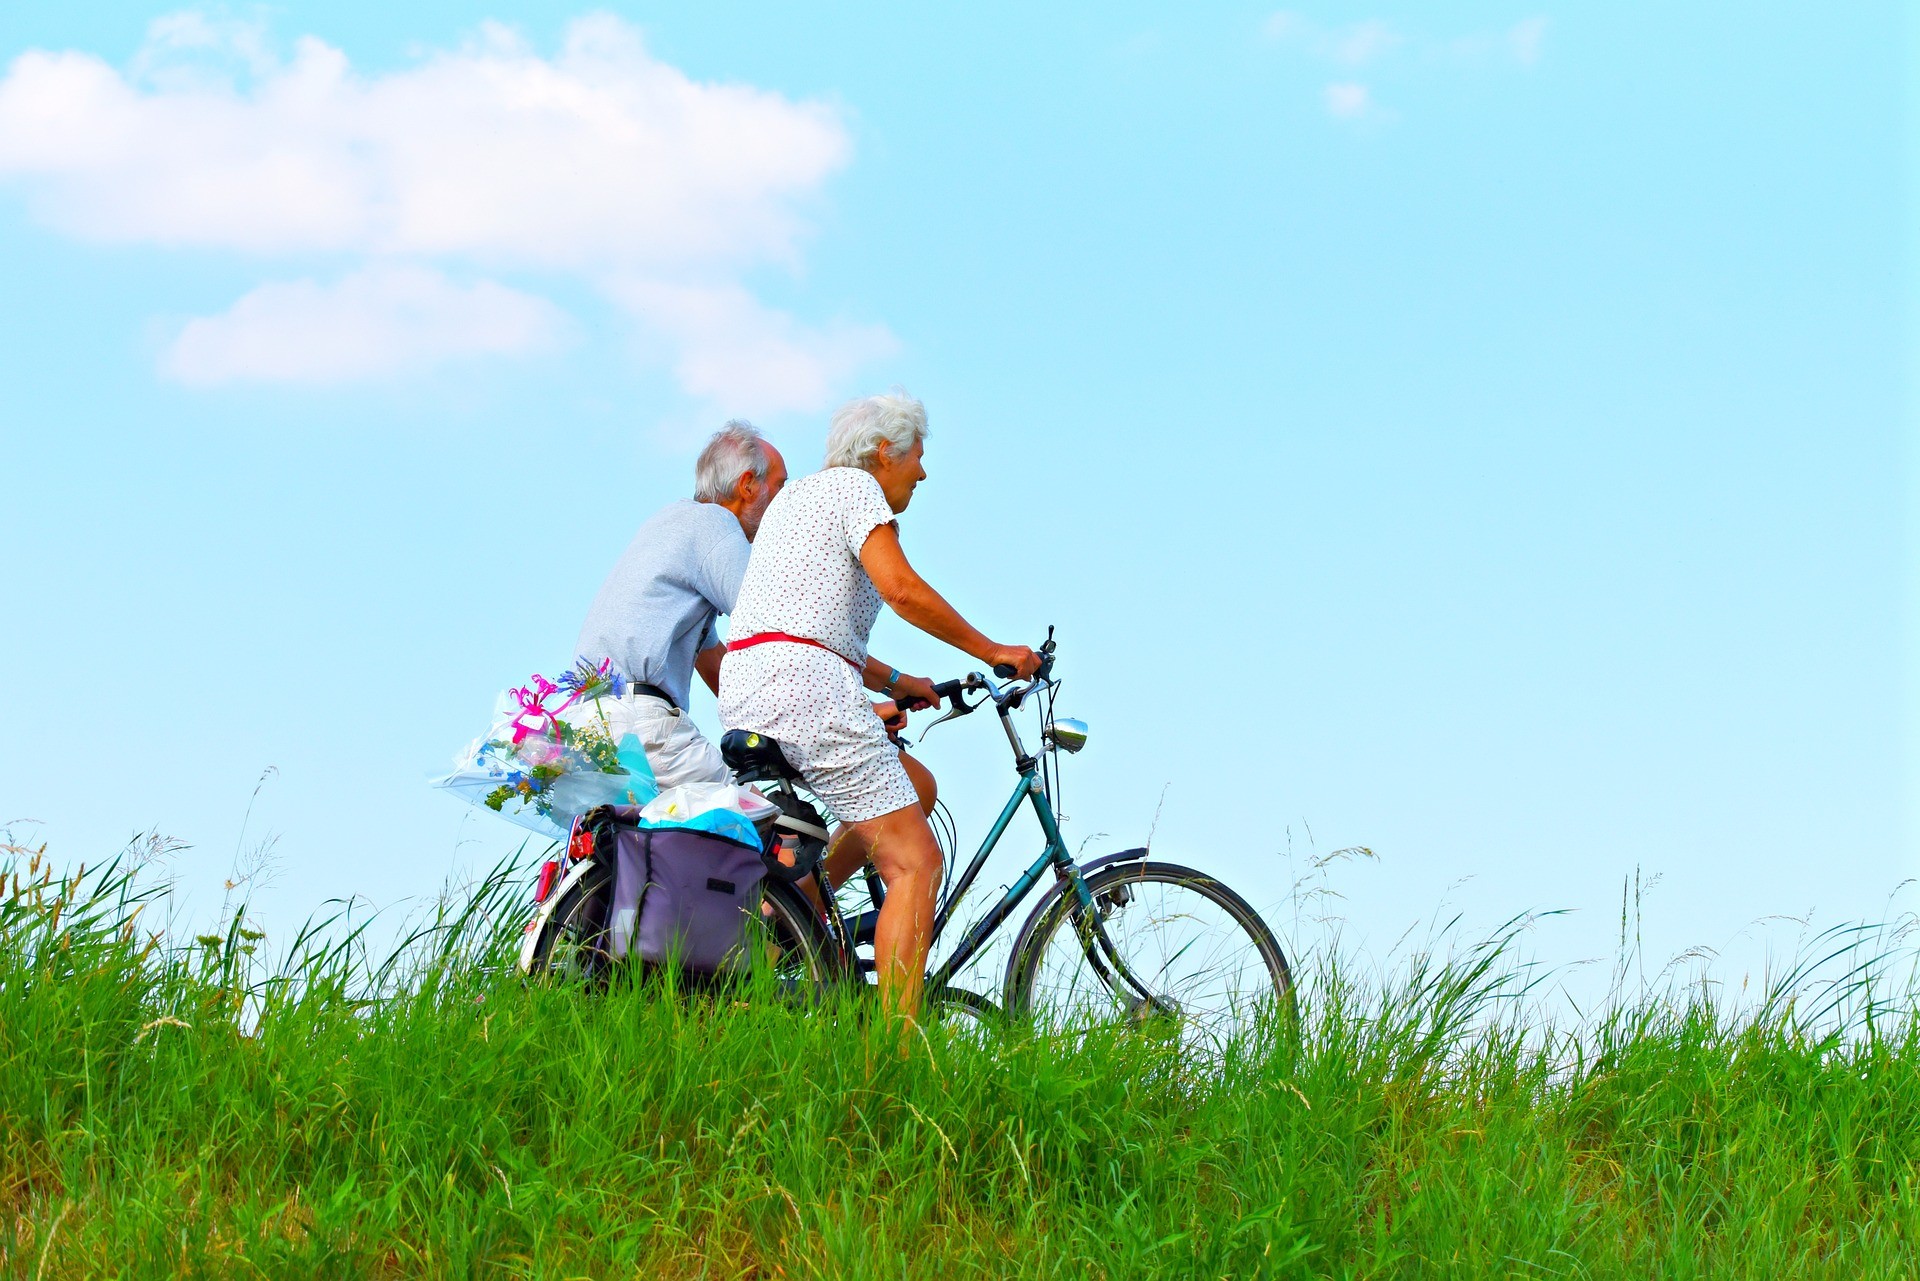 Participar de atividades estimulantes ajuda a diminuir casos de demência (Foto: Pixabay)